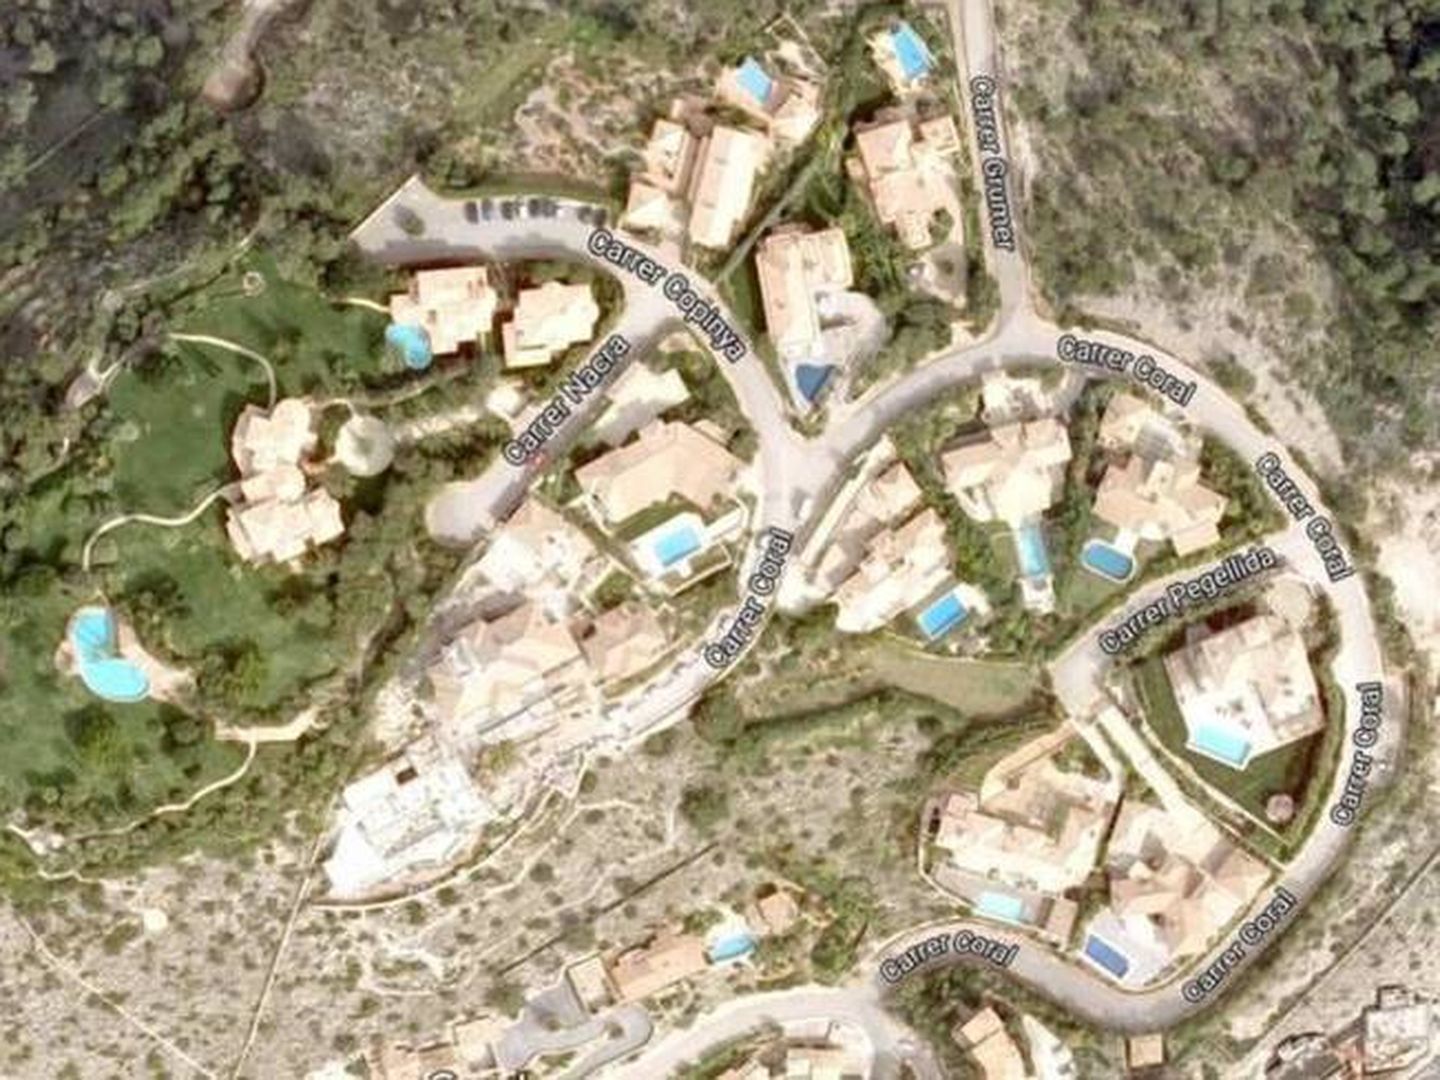  Vista aérea de la urbanización Las Brisas, donde está Villa Yasmín. (Google)